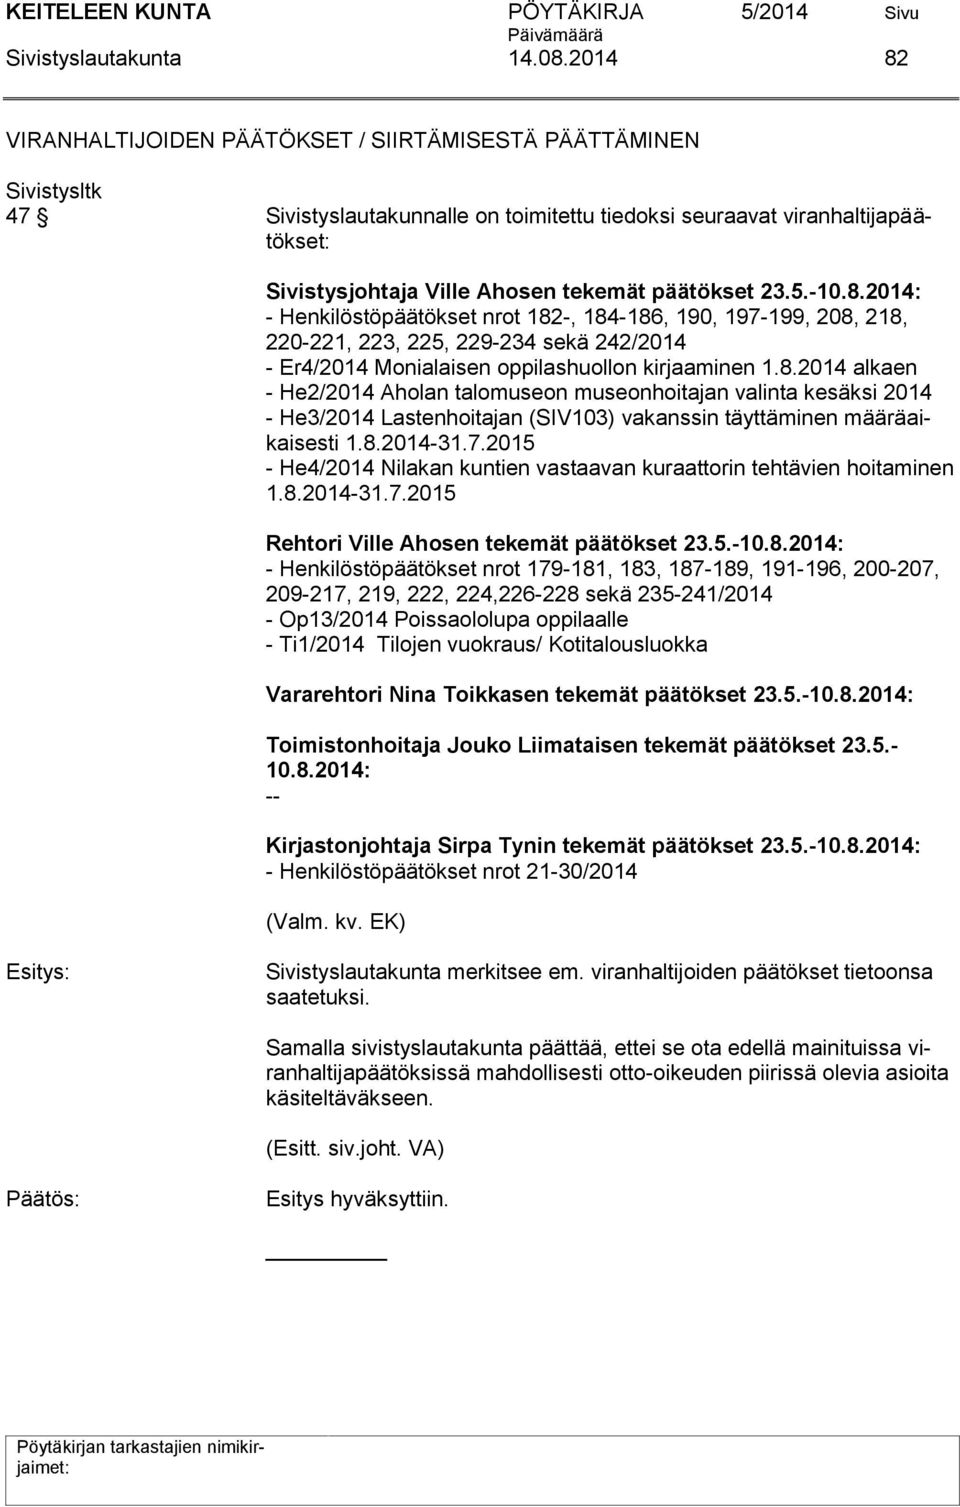 8.2014: - Henkilöstöpäätökset nrot 182-, 184-186, 190, 197-199, 208, 218, 220-221, 223, 225, 229-234 sekä 242/2014 - Er4/2014 Monialaisen oppilashuollon kirjaaminen 1.8.2014 alkaen - He2/2014 Aholan talomuseon museonhoitajan valinta kesäksi 2014 - He3/2014 Lastenhoitajan (SIV103) vakanssin täyttäminen määräaikaisesti 1.